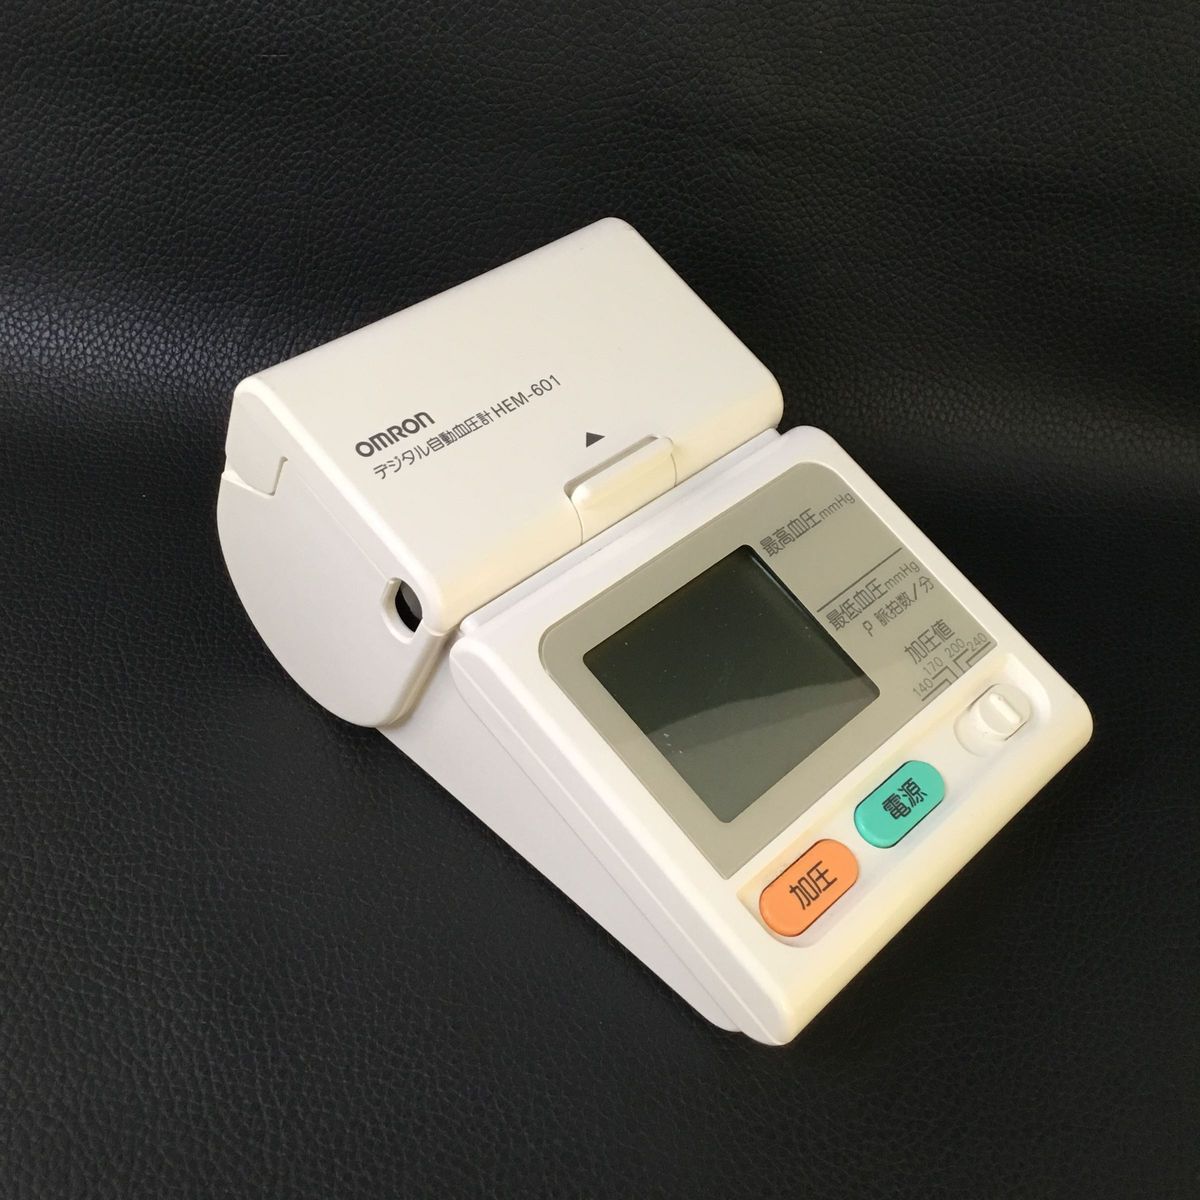 オムロン OMRON デジタル自動血圧計　HEM−601 動作確認済み